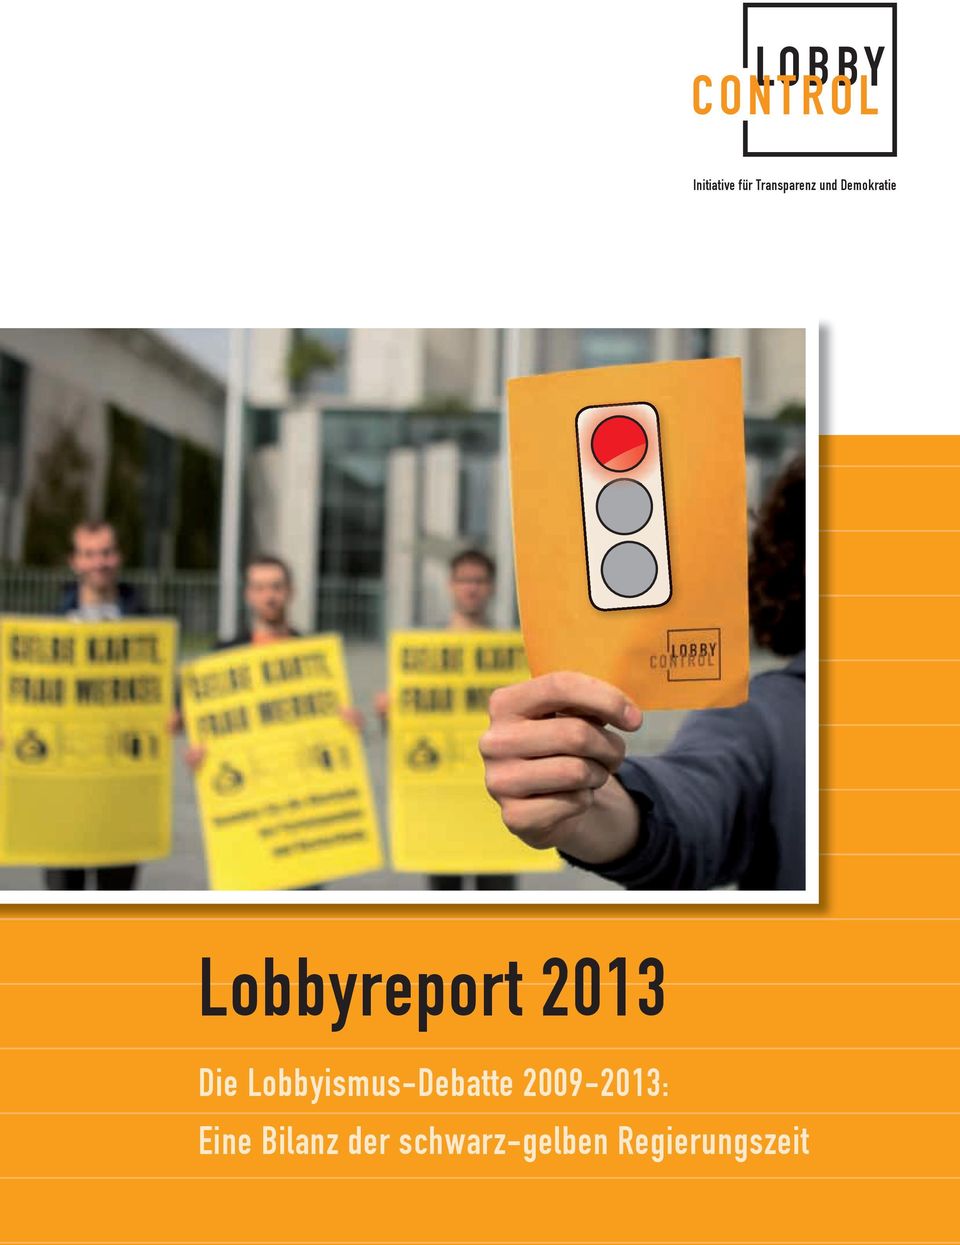 Lobbyismus-Debatte 2009-2013: Eine